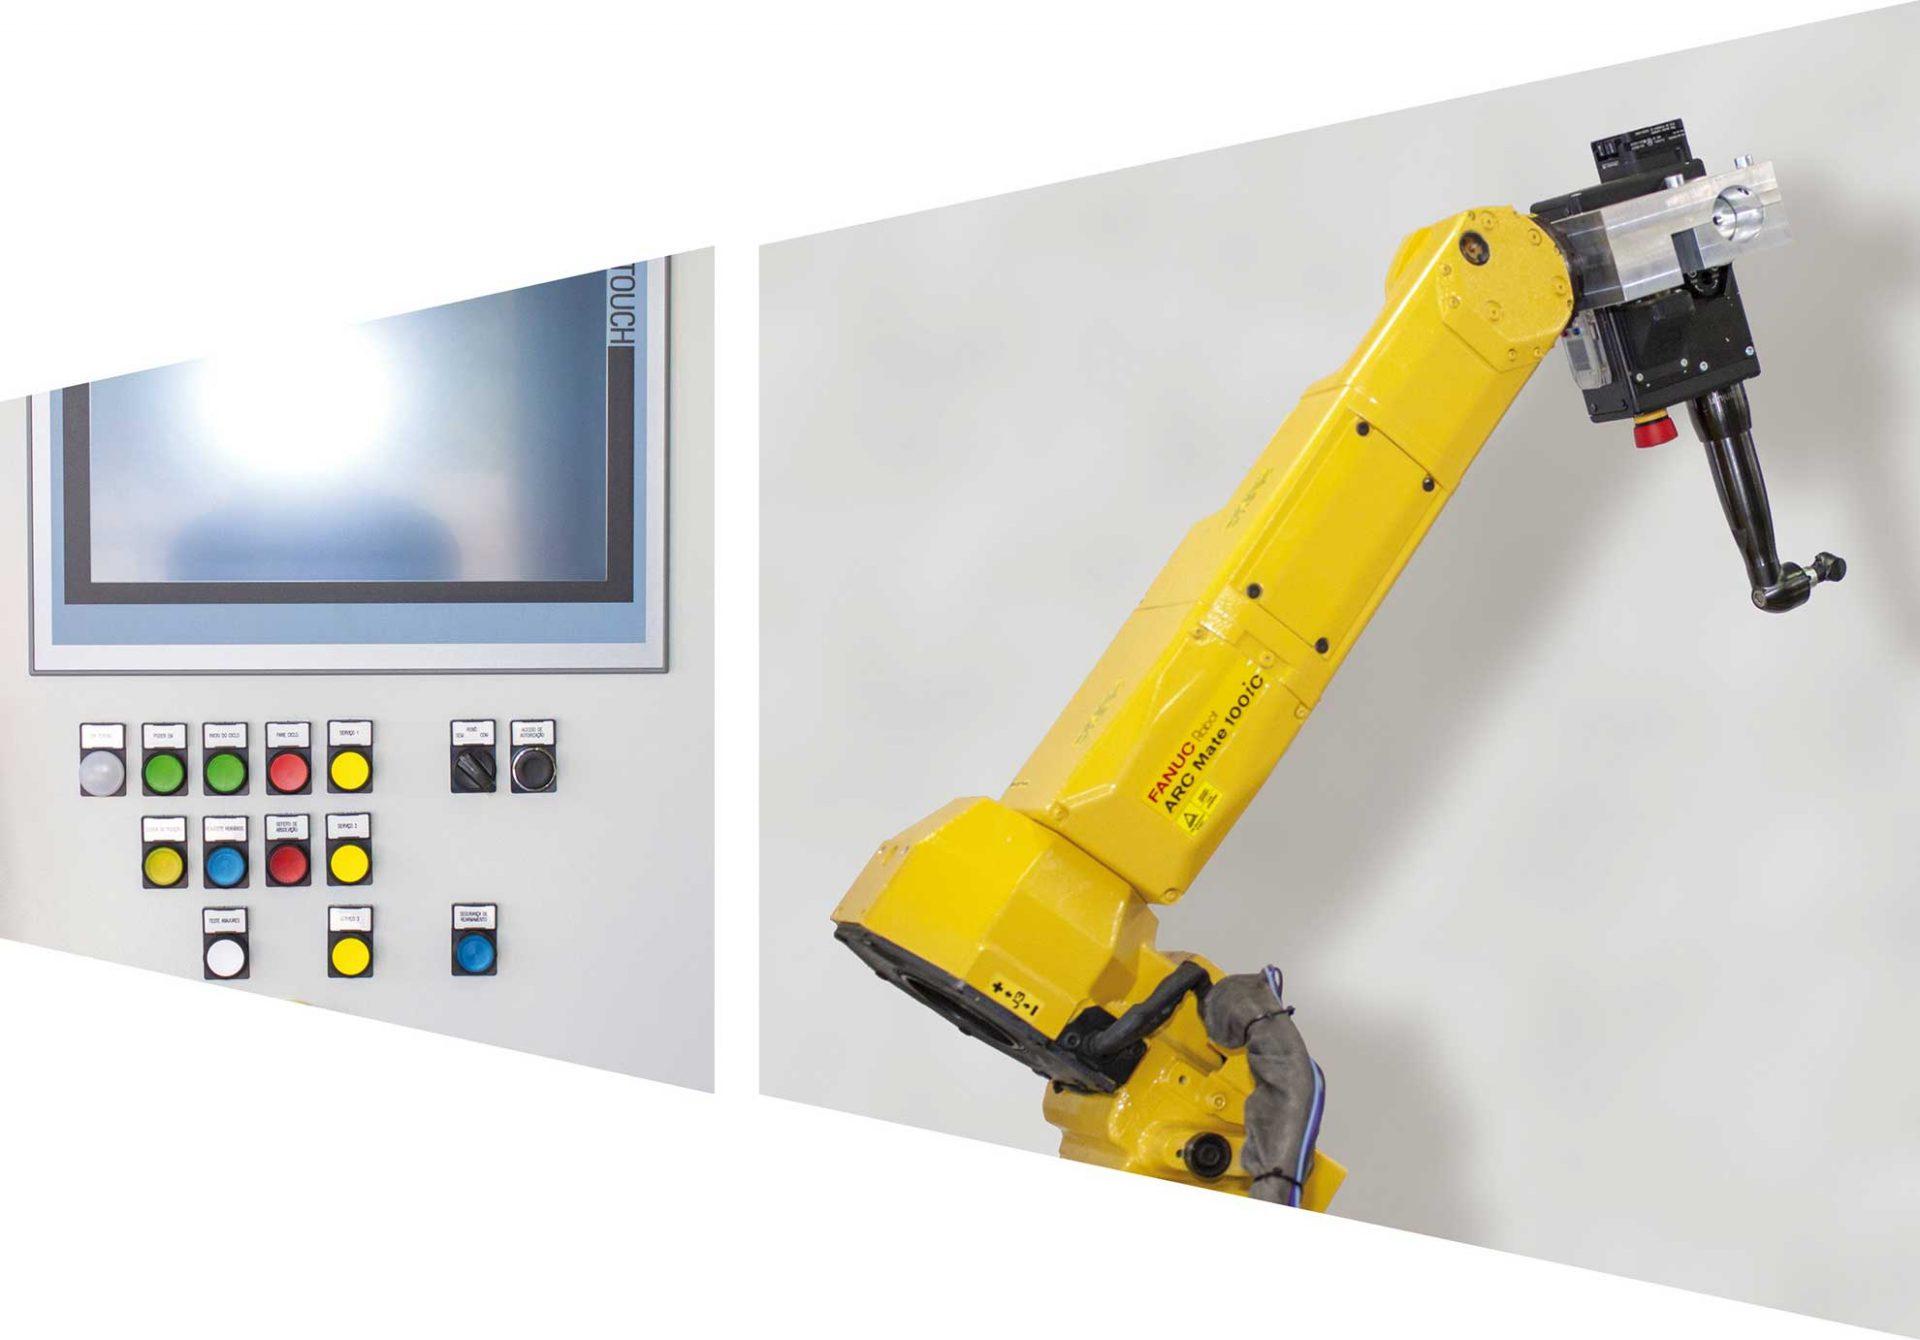 JCEA et Franche-Comté Câblage - Solutions sur-mesure en systèmes automatisés et robotisés, câblages, armoires et coffrets électriques